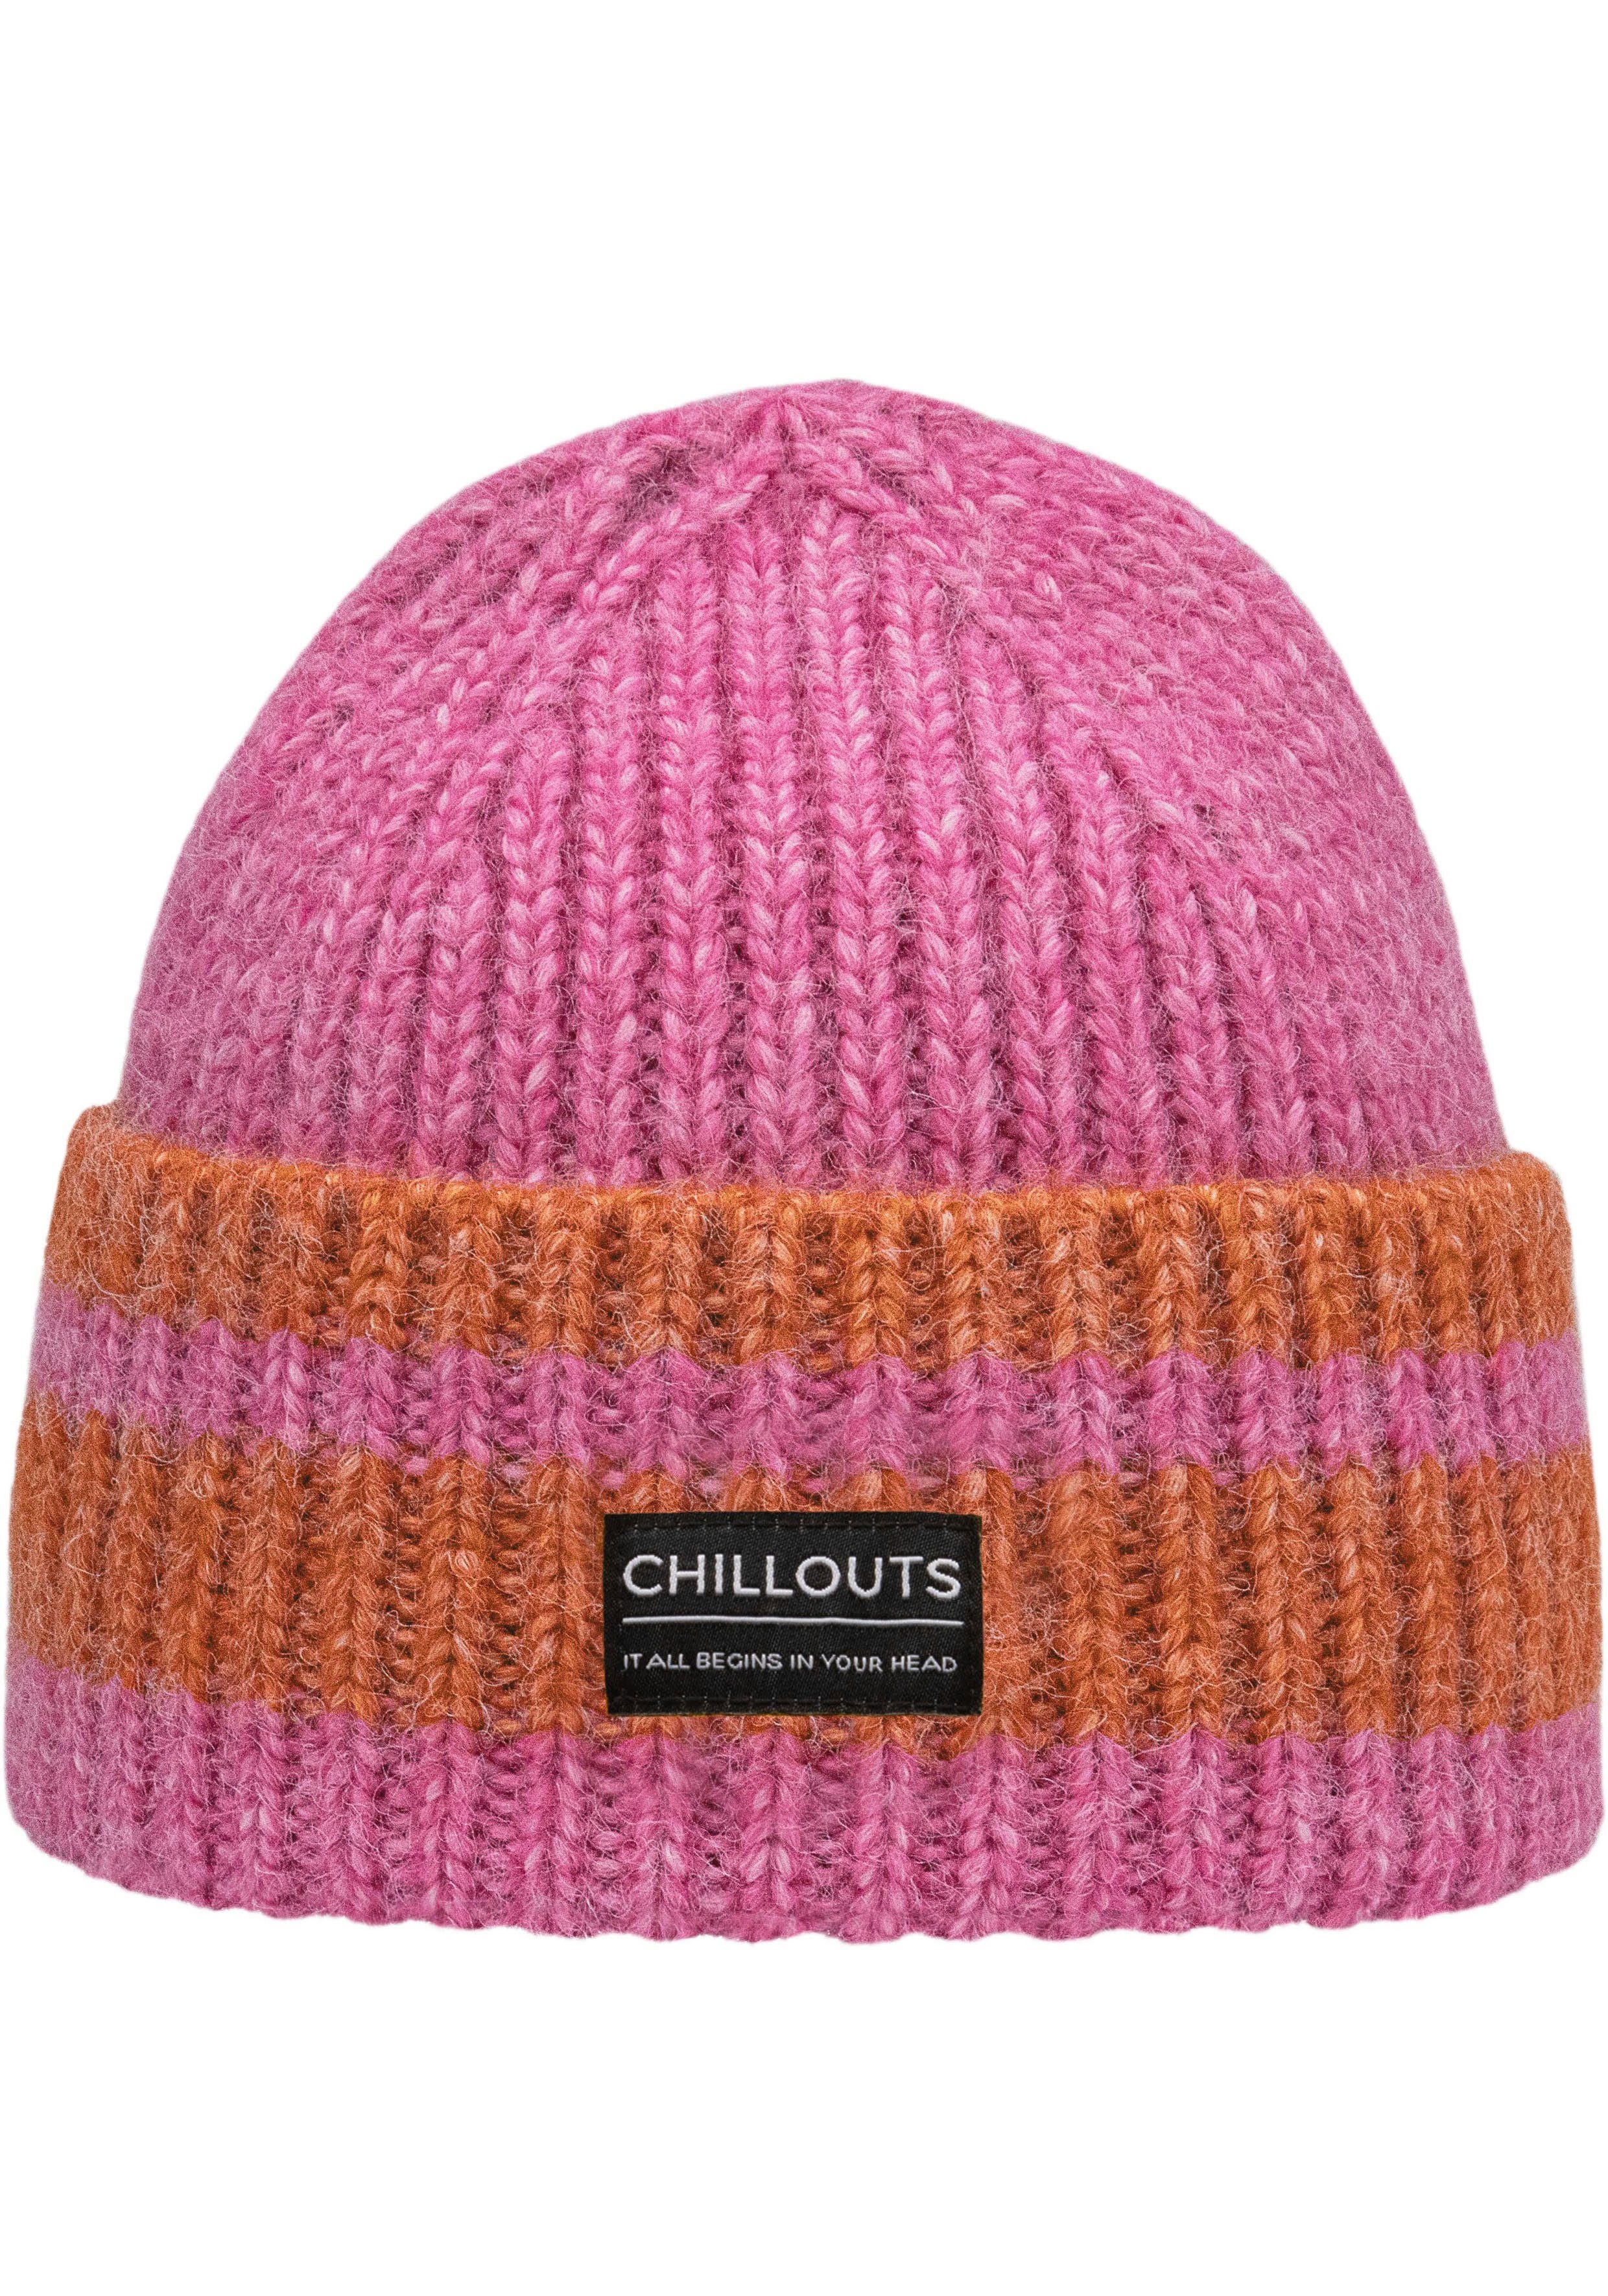 chillouts Strickmütze Cooper Hat mit Kontrast-Streifen pink-orange